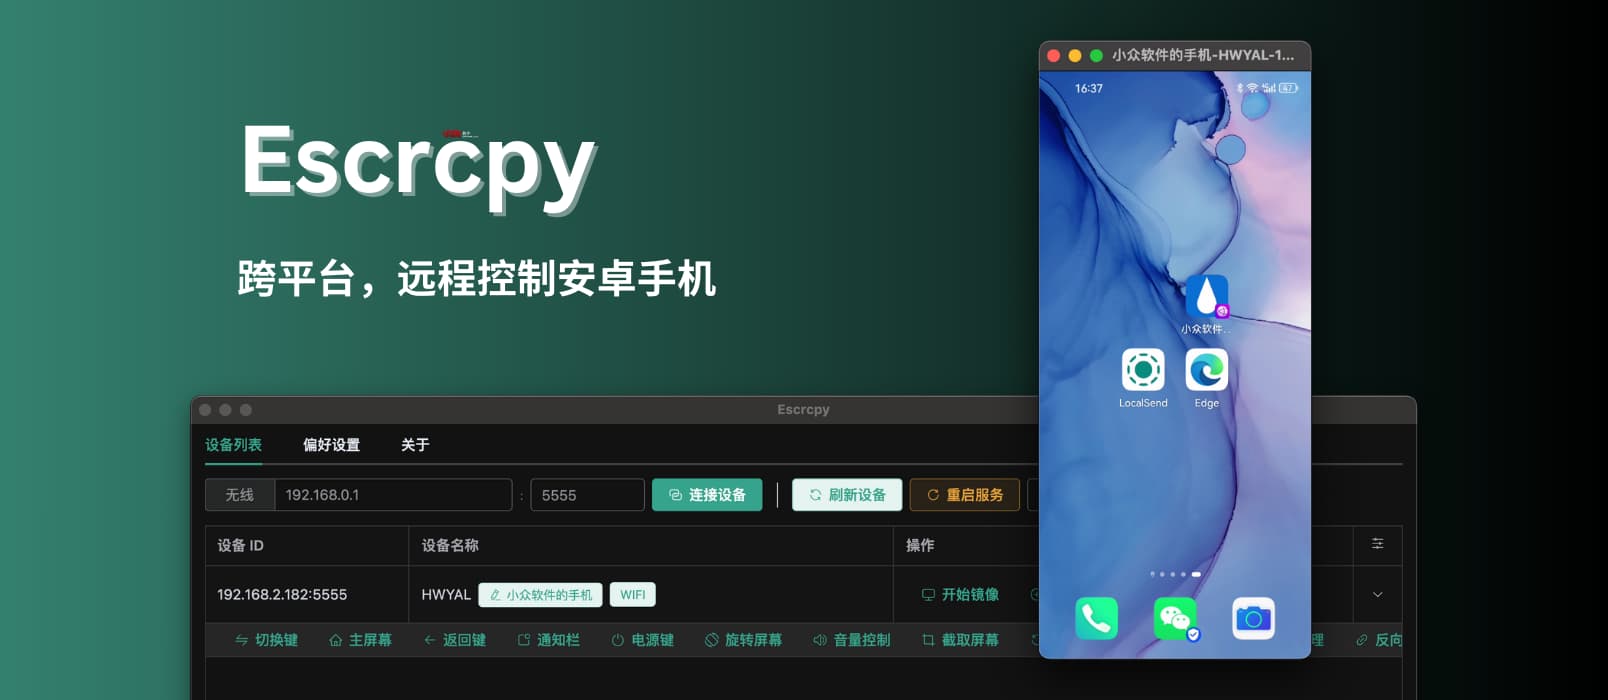 Escrcpy – 跨平台，远程控制安卓手机：3 天前更新，使用 Electron 的 Scrcpy 图形界面工具